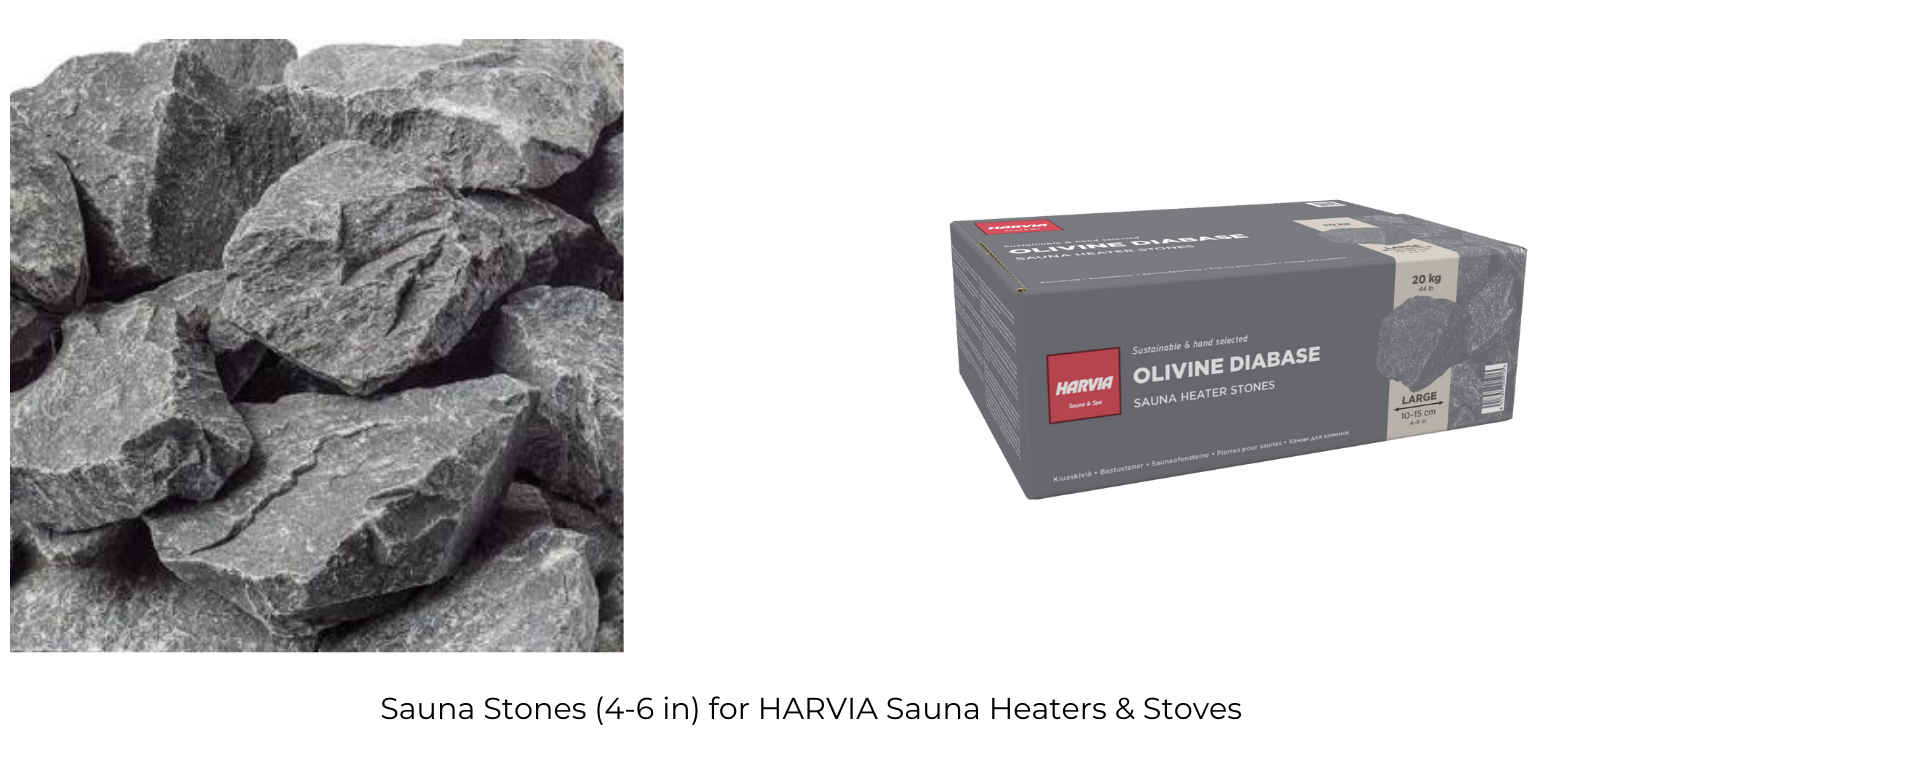 Harvia M3 16.5kW Wood-Burning Sauna Stove